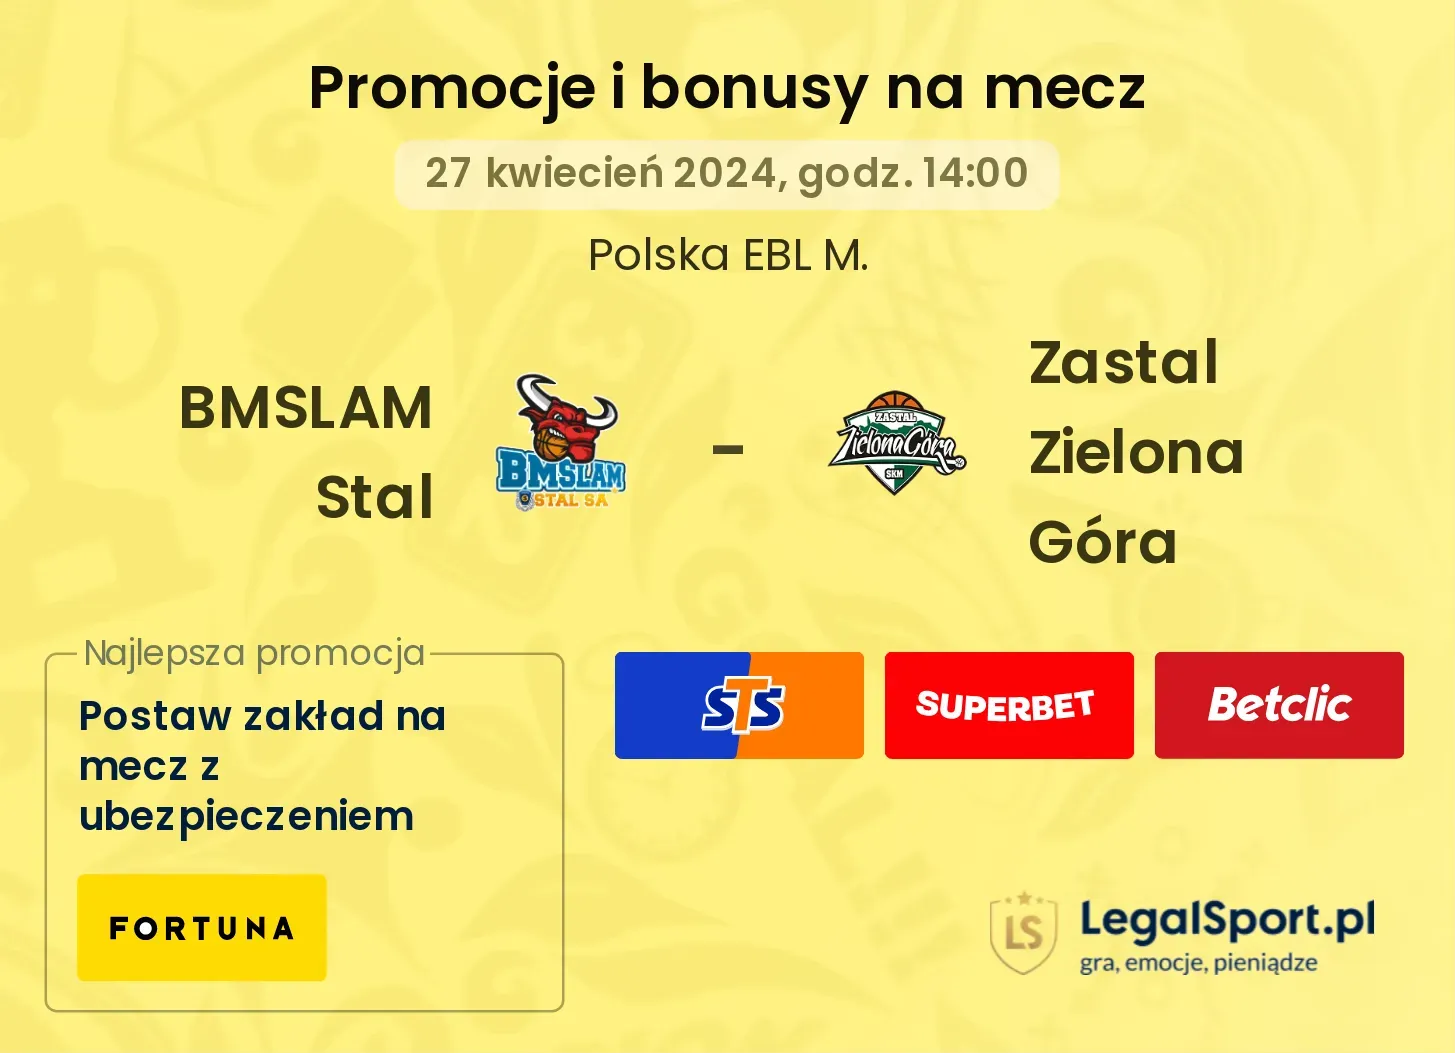 BMSLAM Stal - Zastal Zielona Góra promocje bonusy na mecz